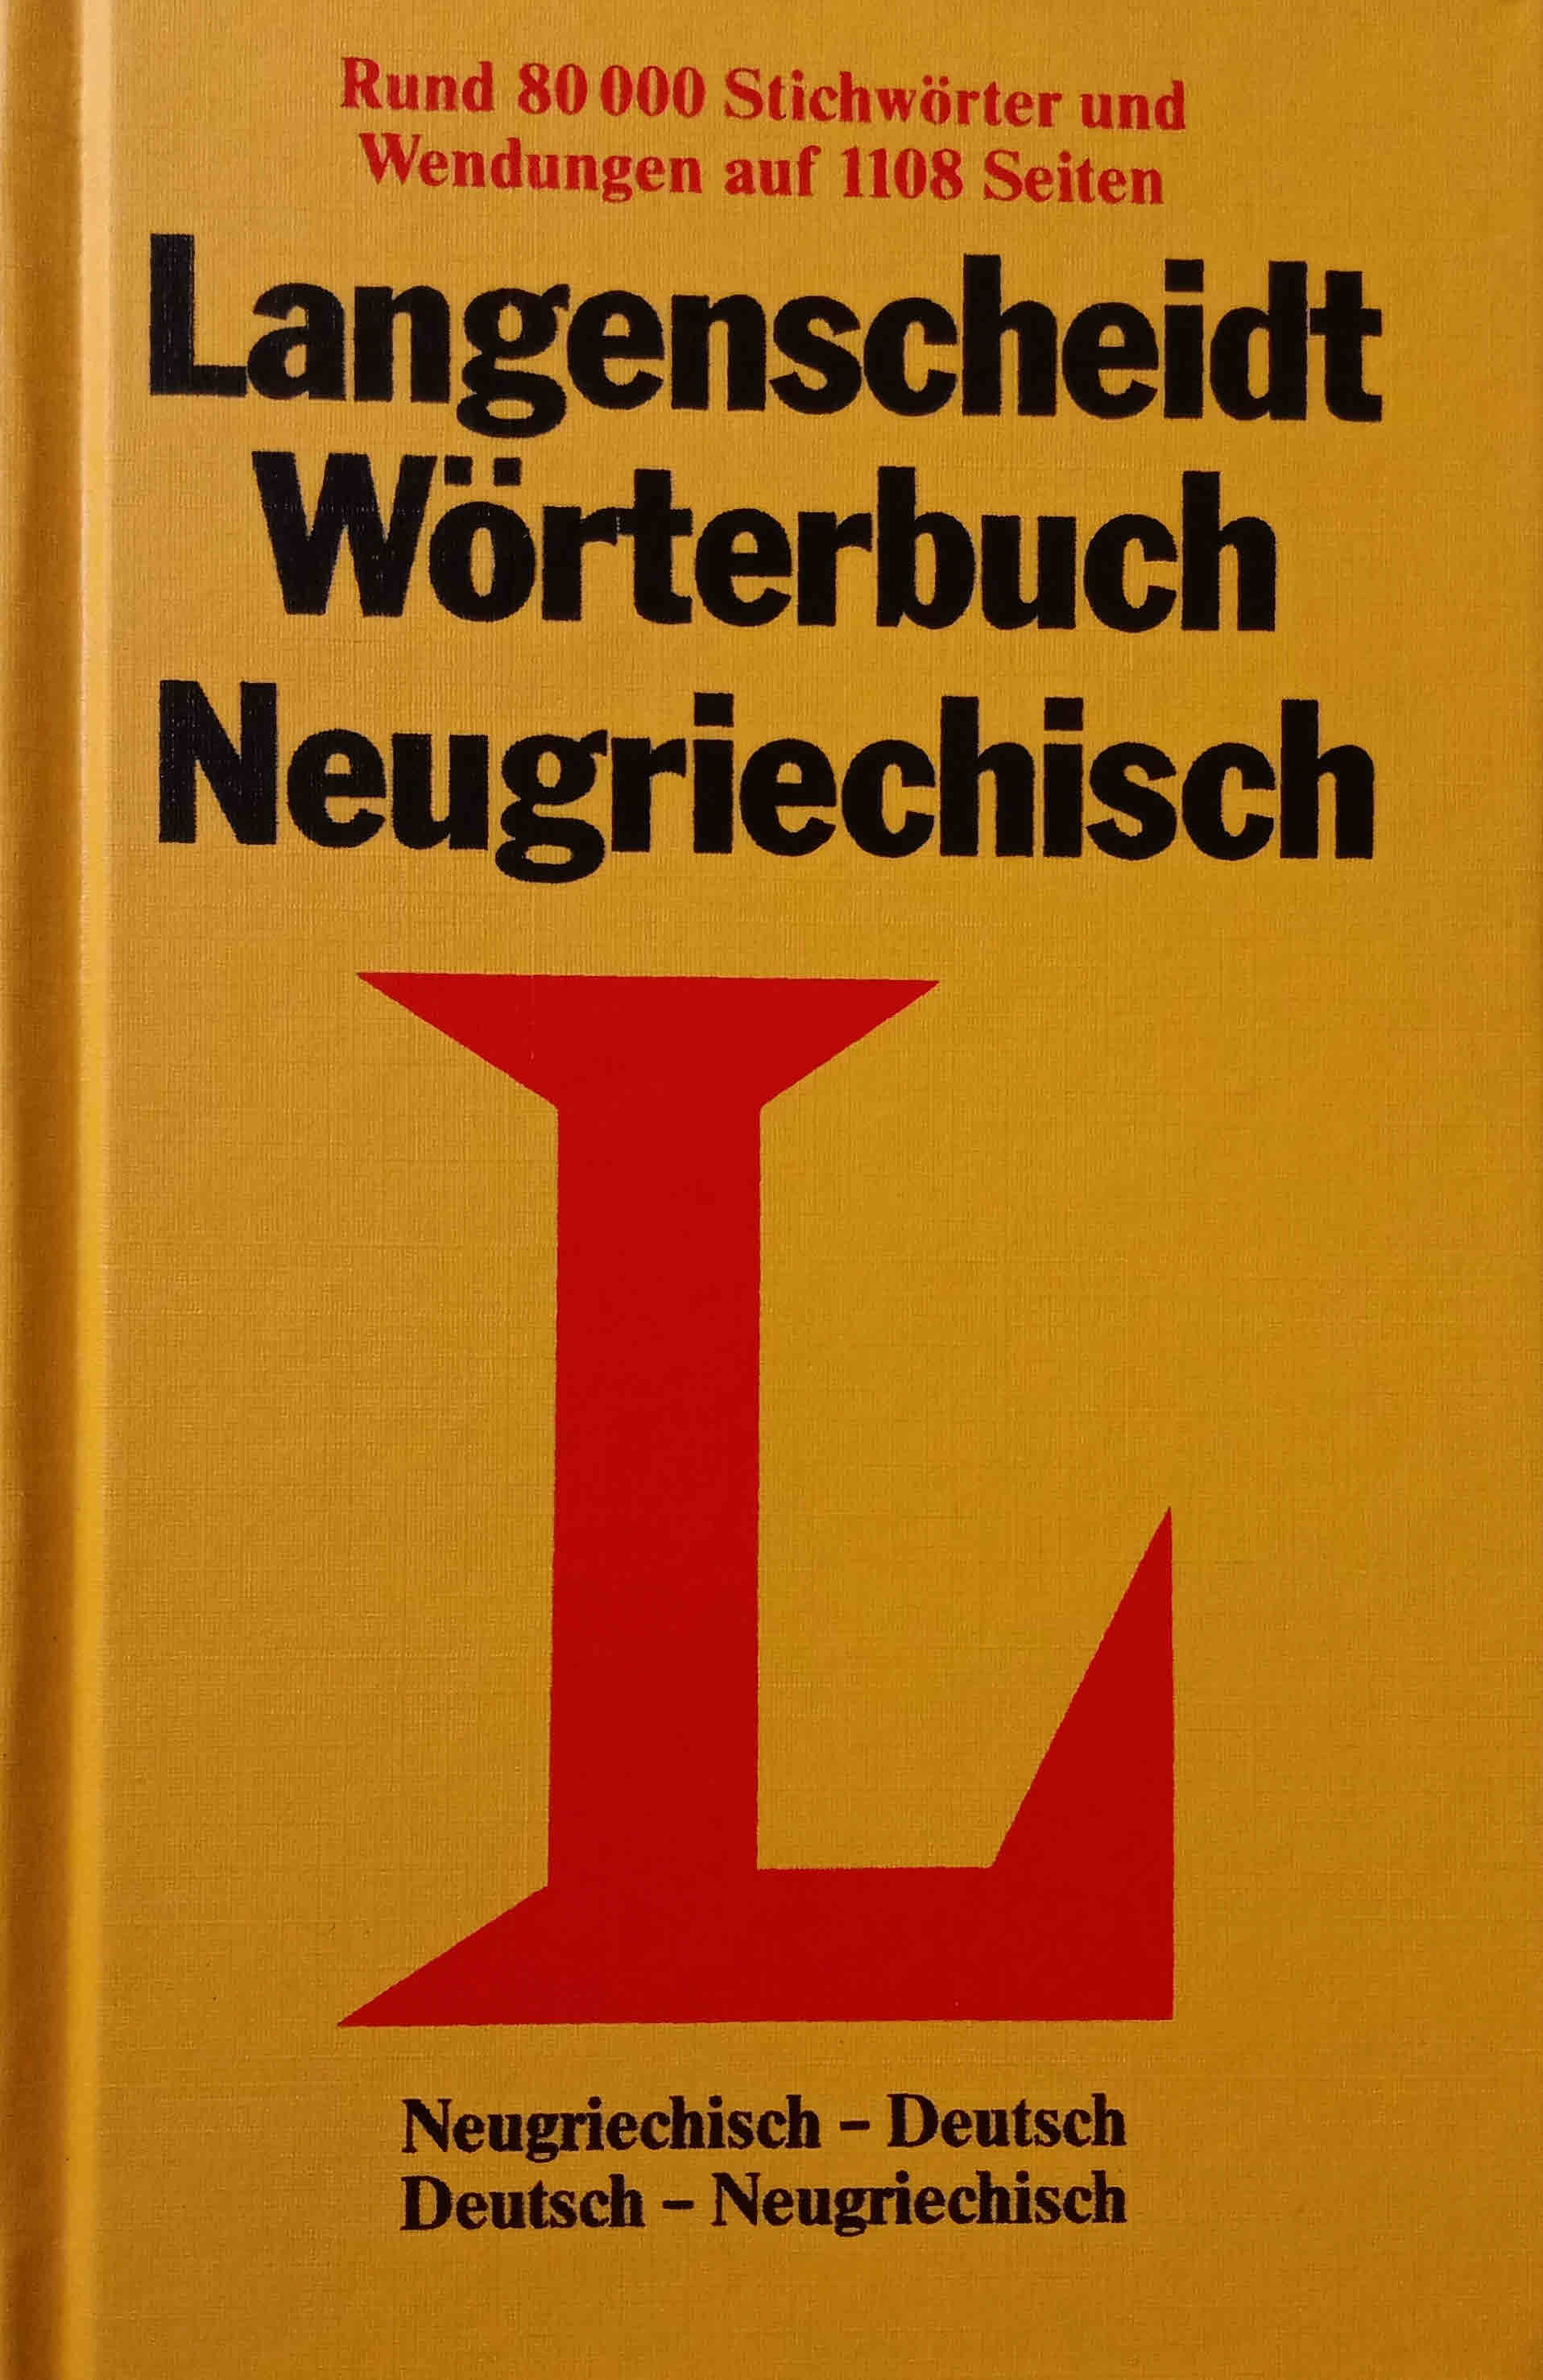 Langenscheidts Taschenwörterbuch Neugriechisch-Deutsch. Deutsch-Neugriechisch [2 Bände in 1 Buch] - Wendt, Heinz F.